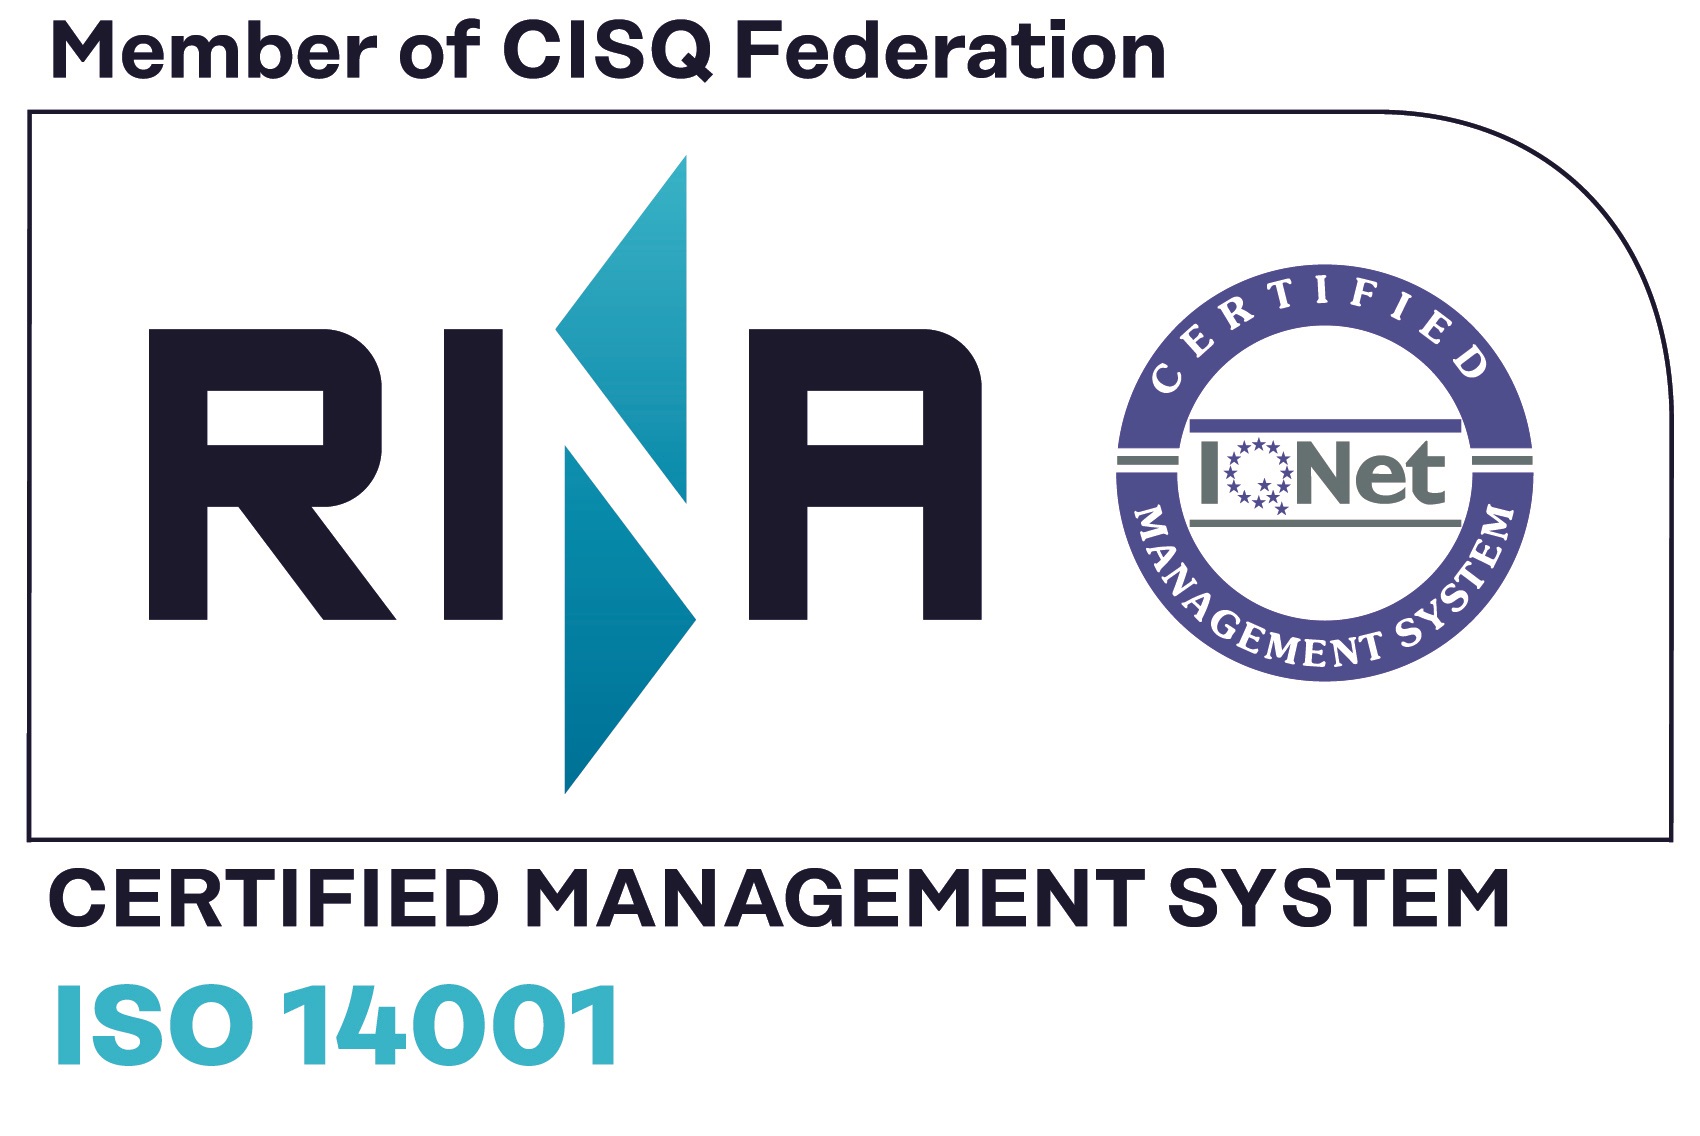 RINA ISO 14001